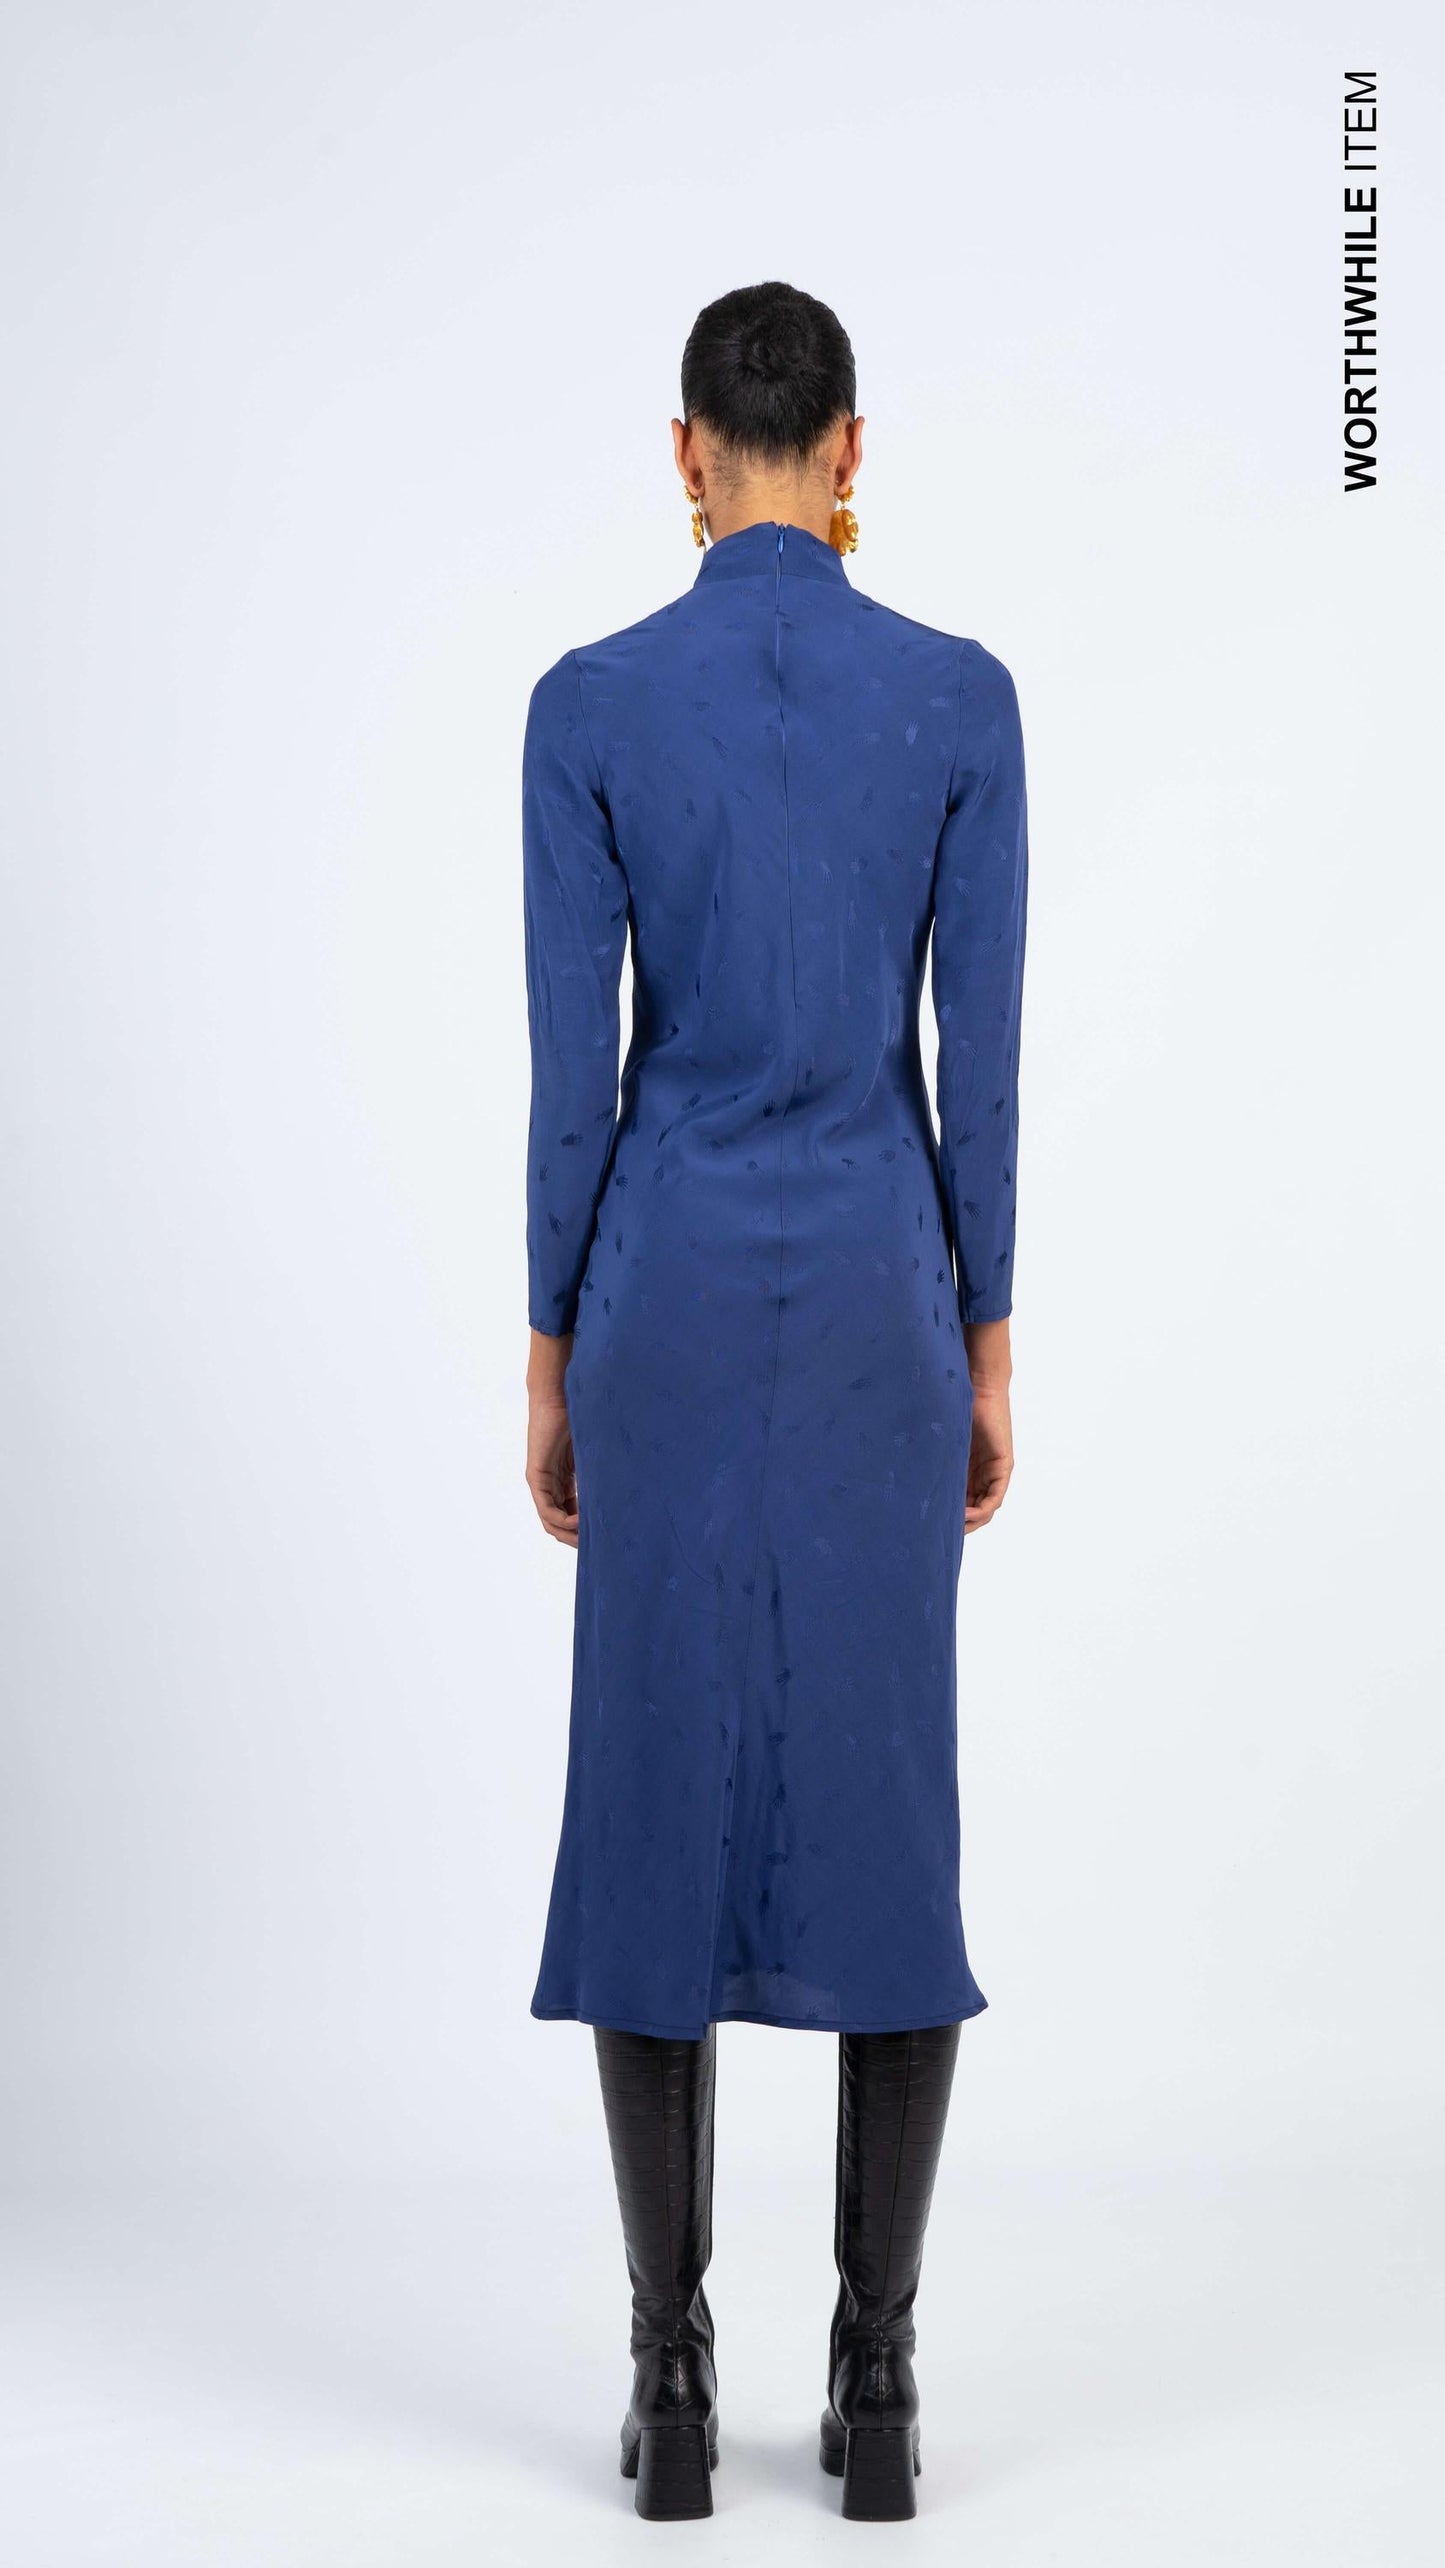 Jacquard blue dress